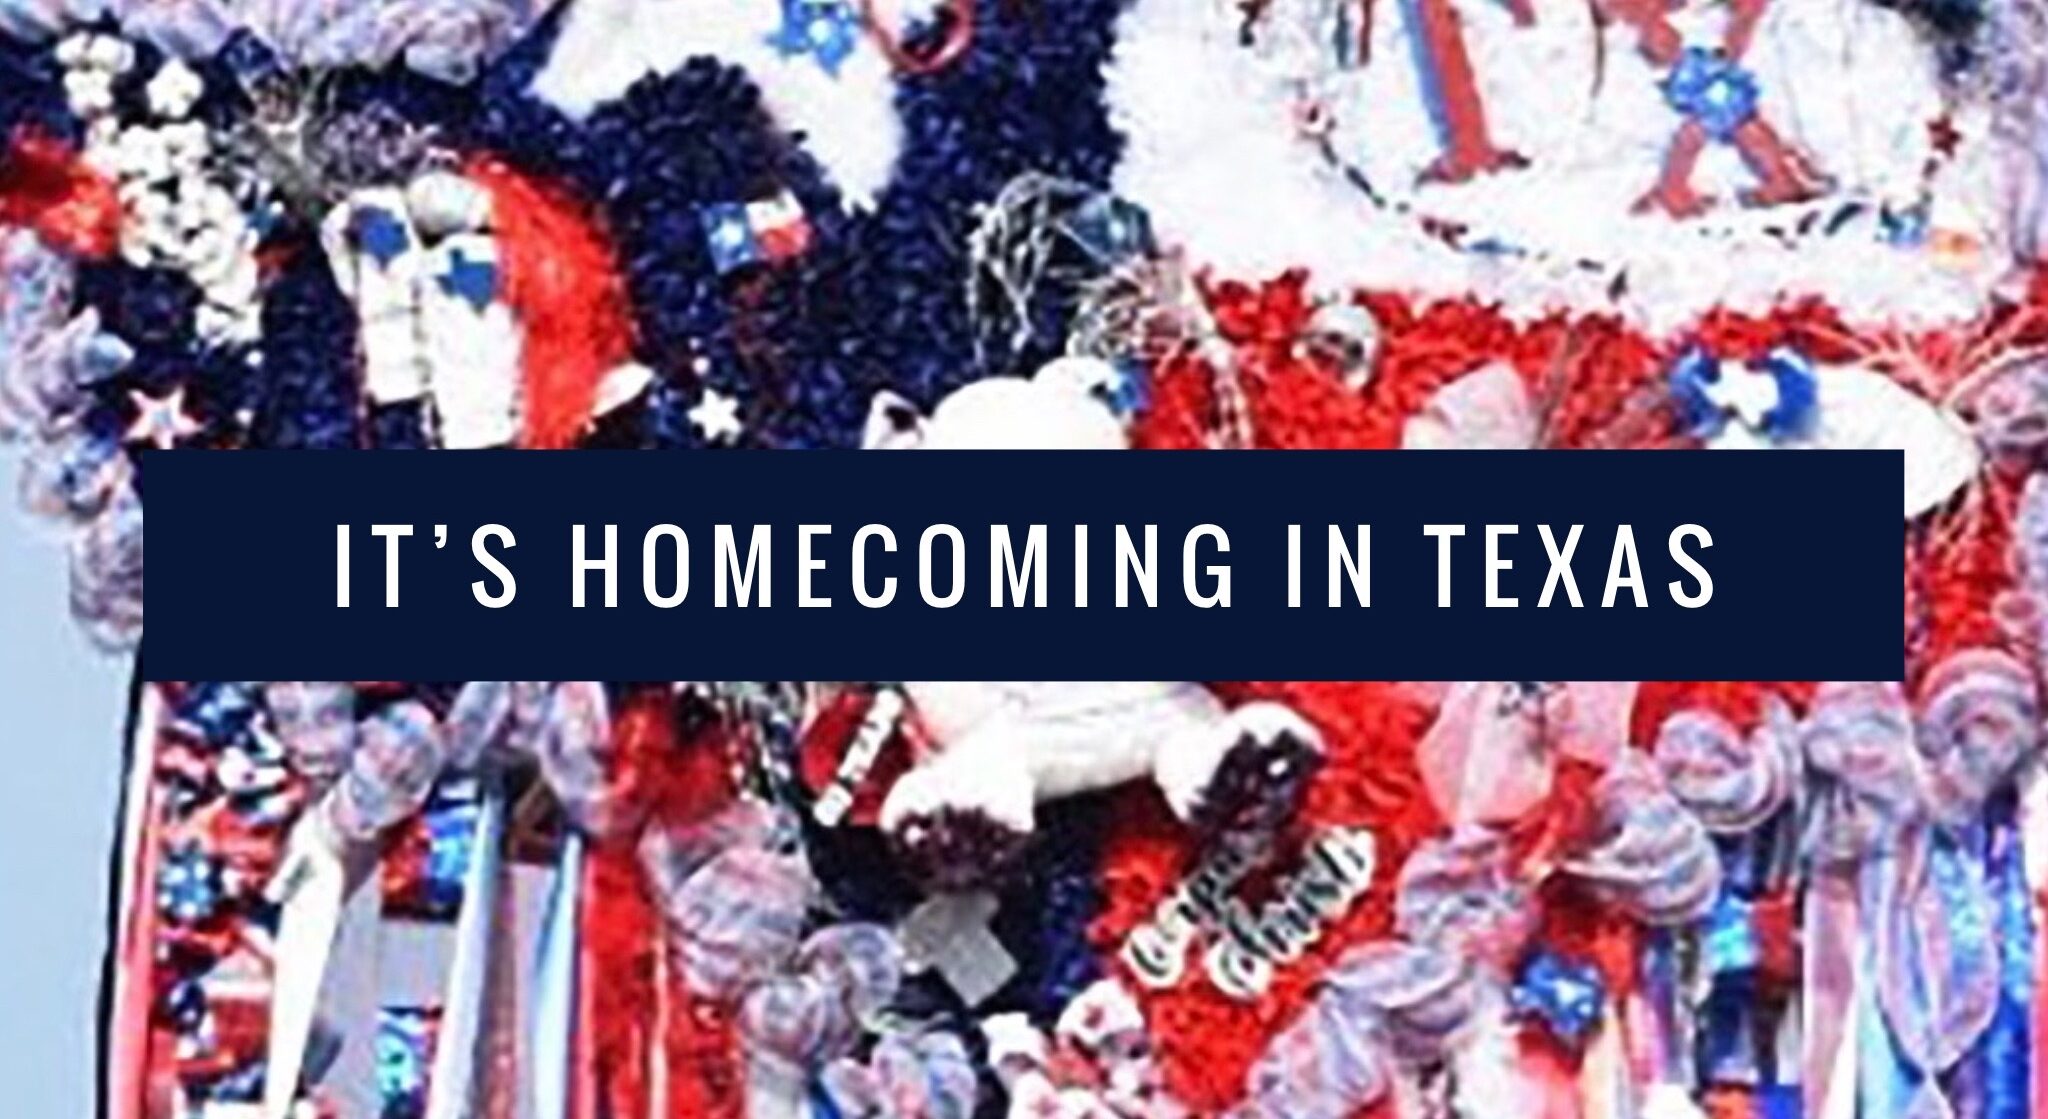 Texas homecoming, teens, high school